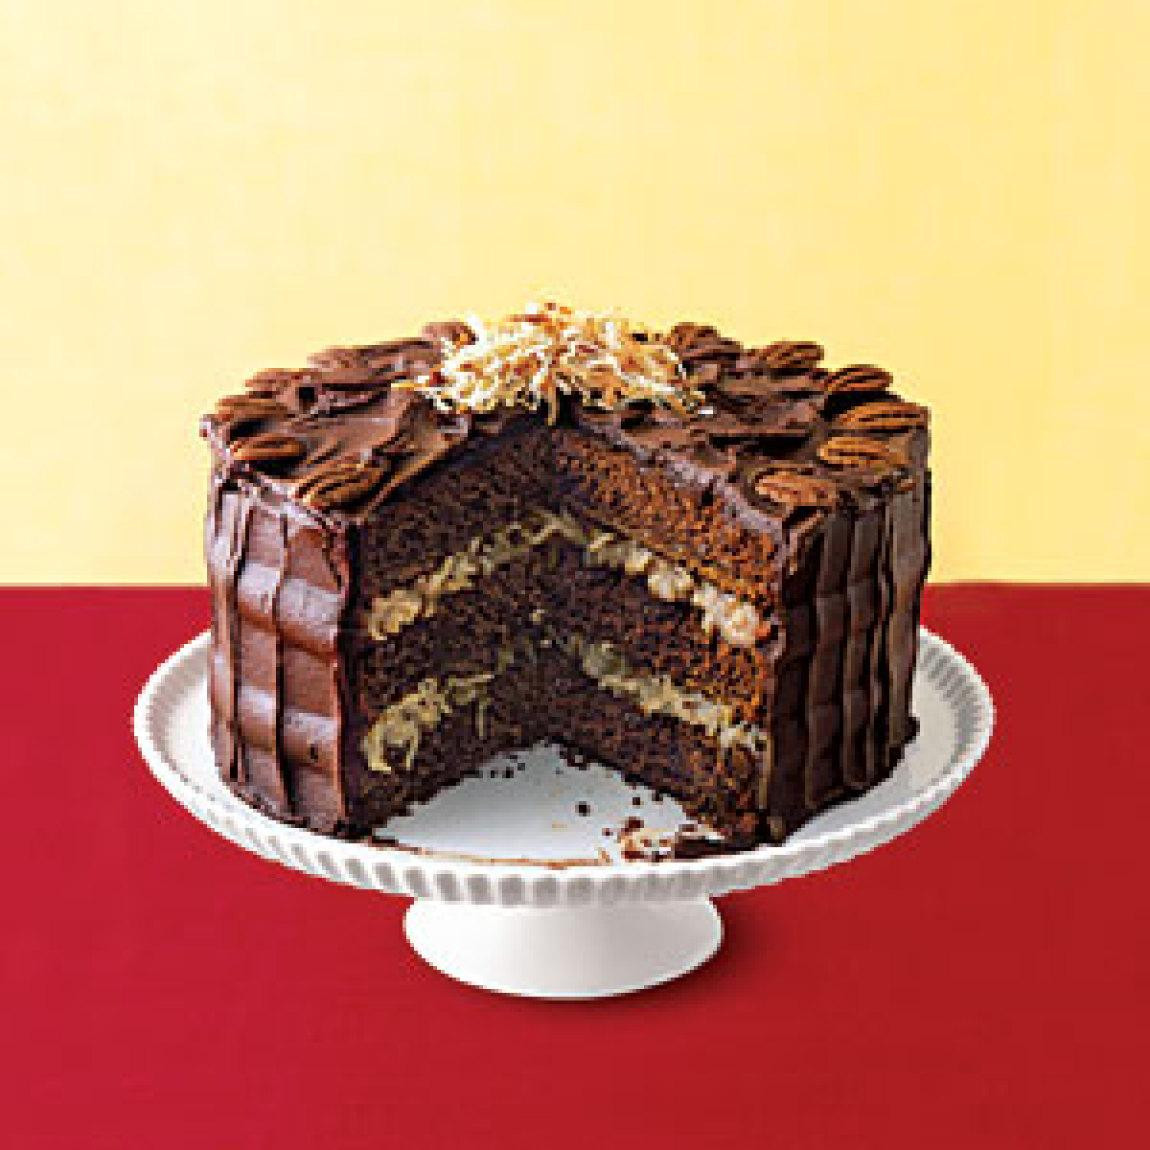 German Chocolate Cake Recipes
 German Chocolate Cake Recipe